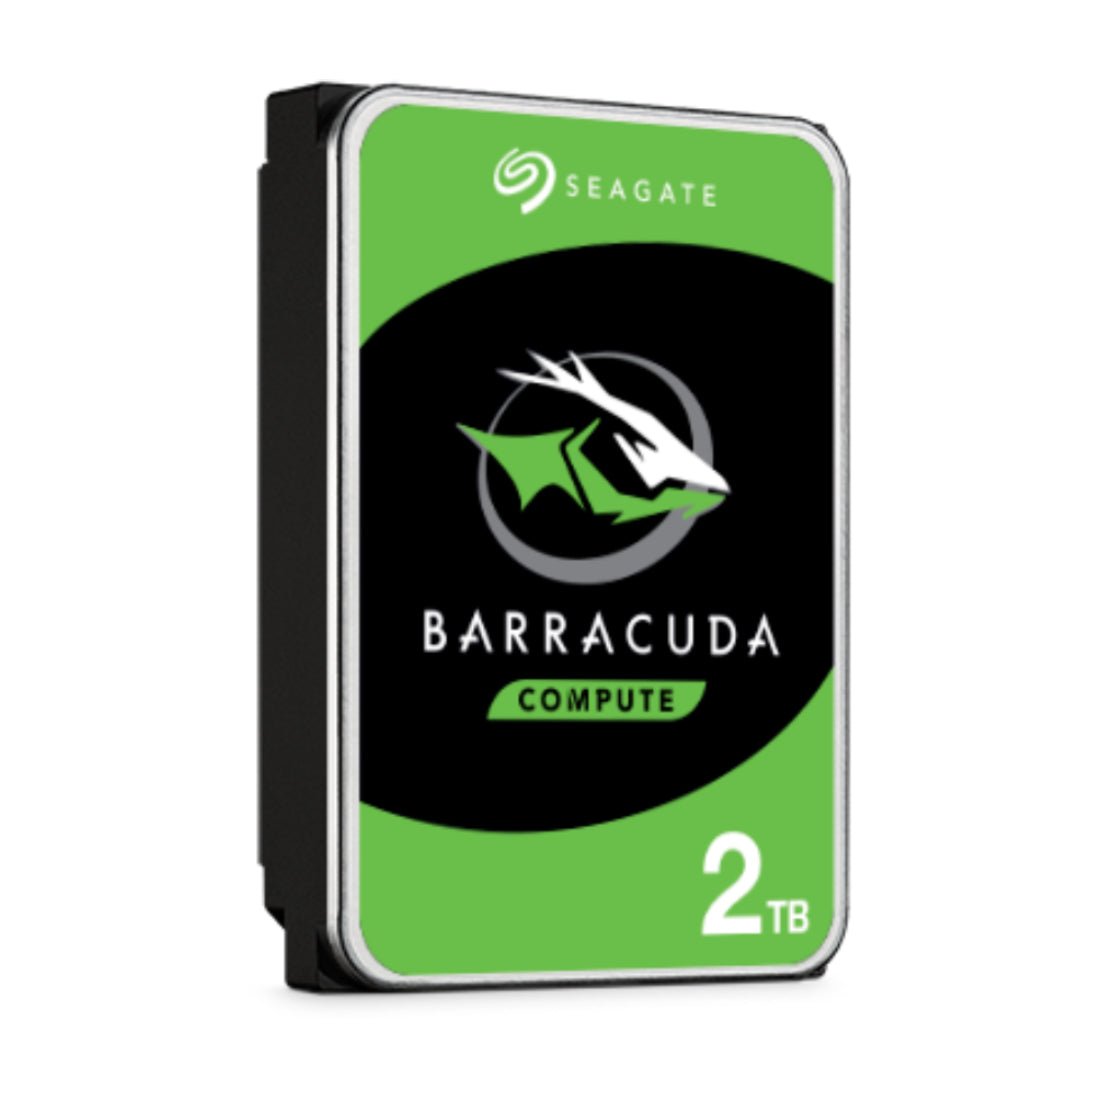 Seagate BarraCuda 2TB 3.5 Inch Internal SATA HDD - مساحة تخزين - Store 974 | ستور ٩٧٤